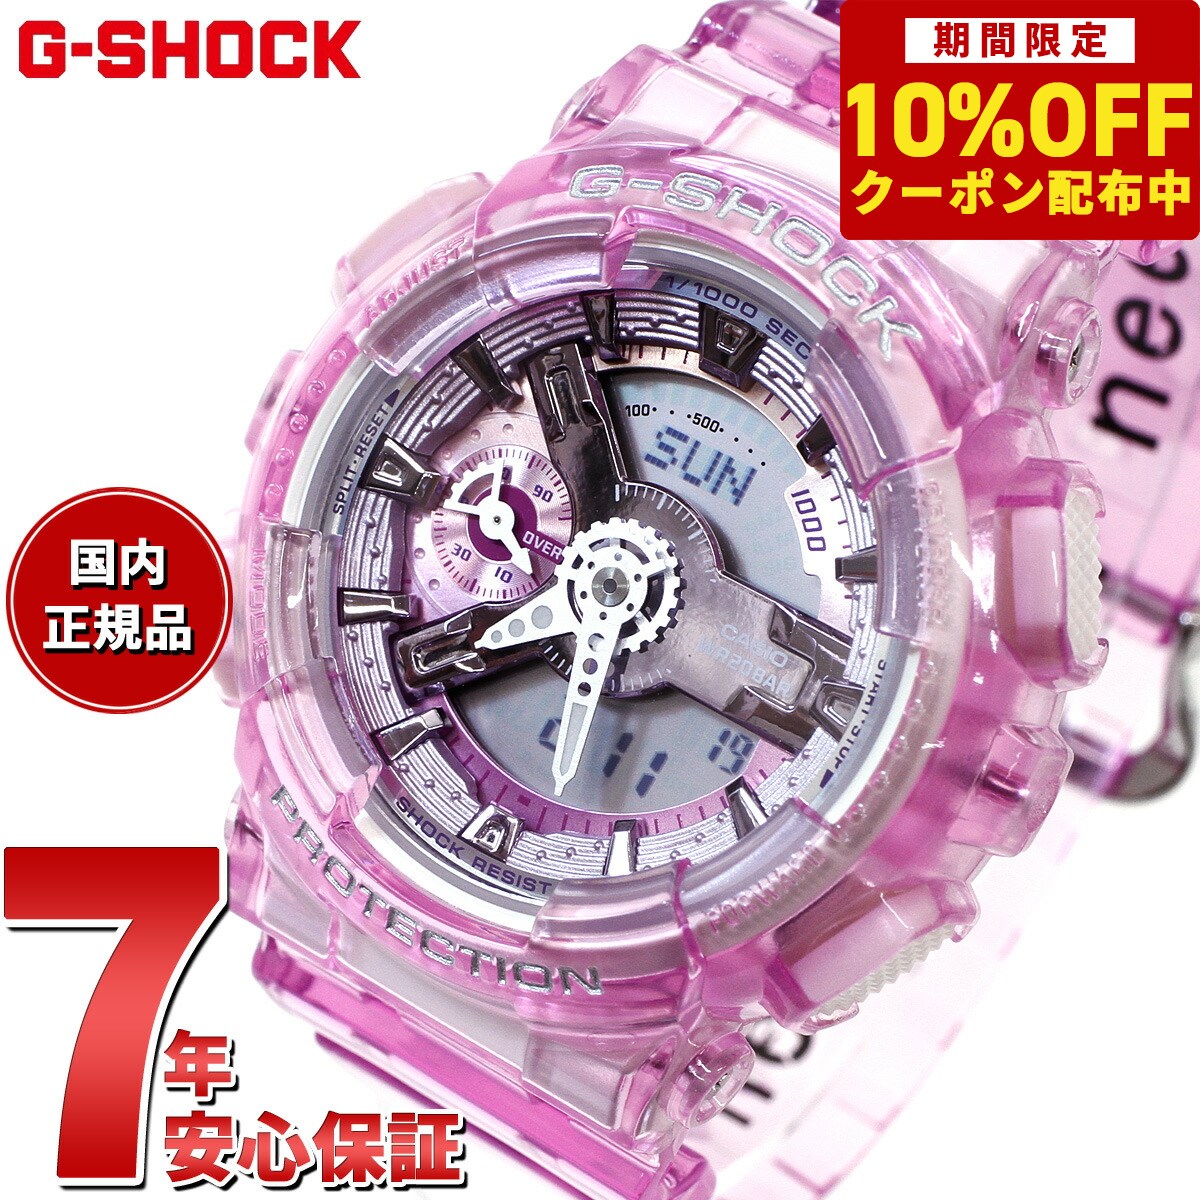 G-SHOCK カシオ Gショック CASIO オンライン限定モデル 腕時計 メンズ レディース GMA-S110VW-4AJF GA-110 小型化・薄型化モデル クリアスケルトン ピンク